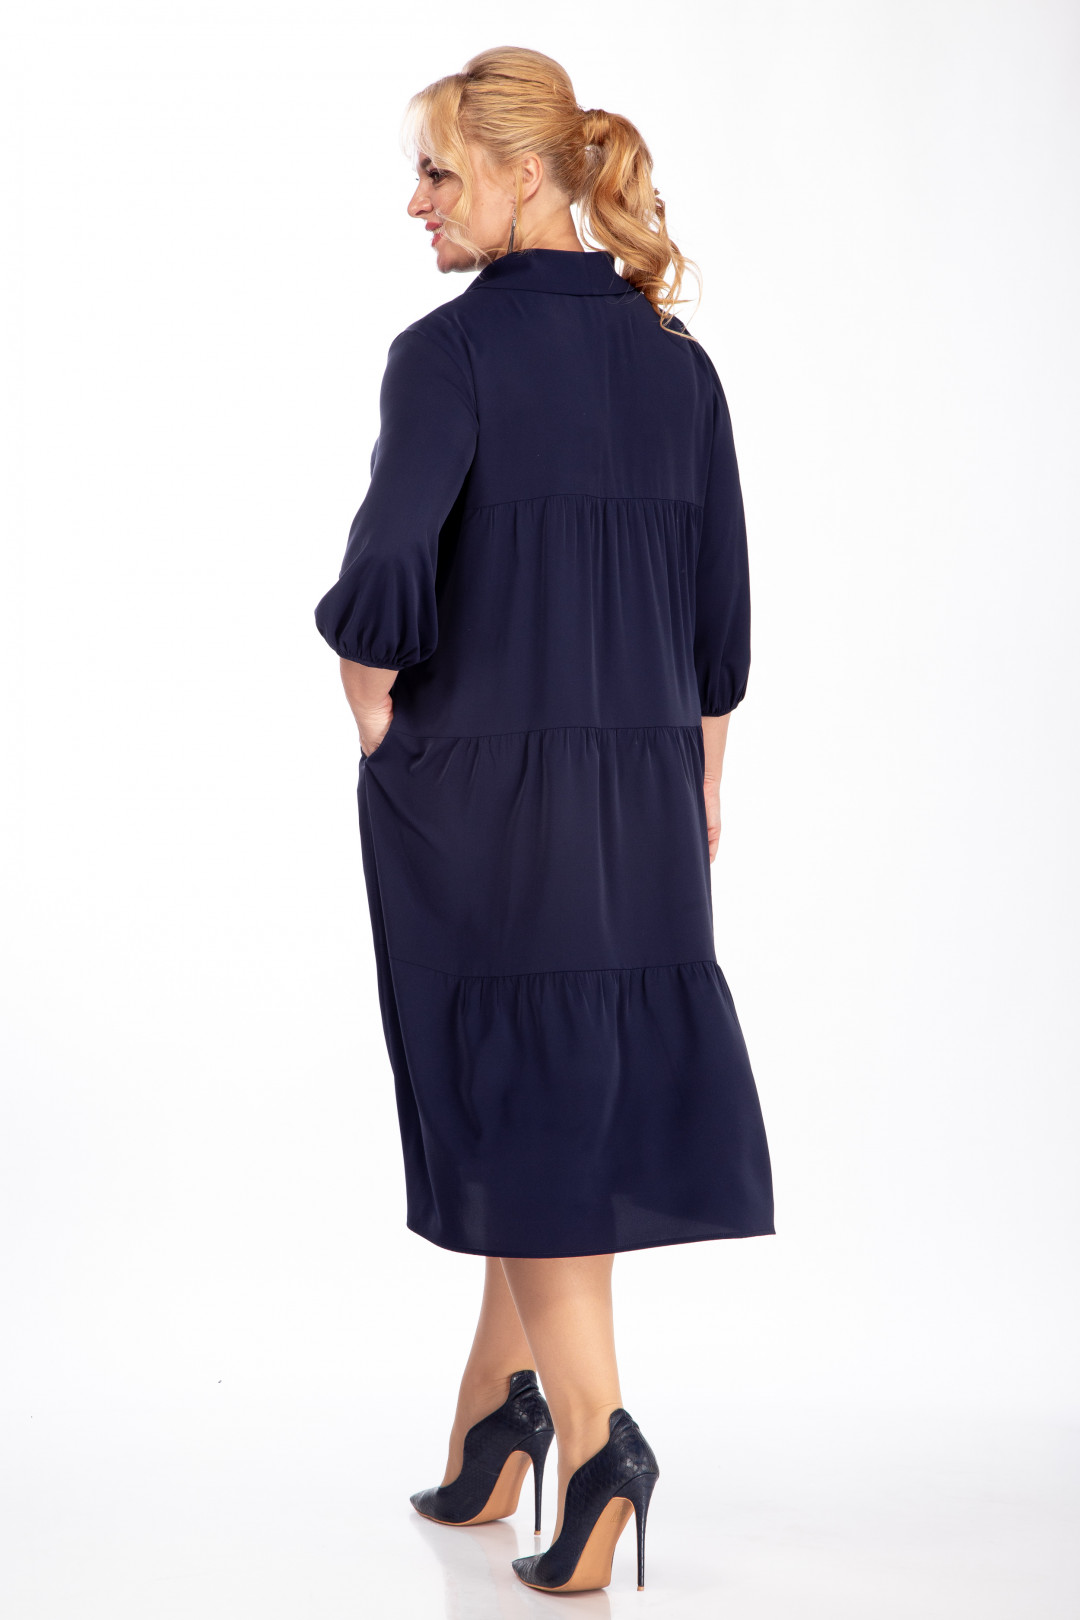 Платье Карина Делюкс М-1013-1 синий